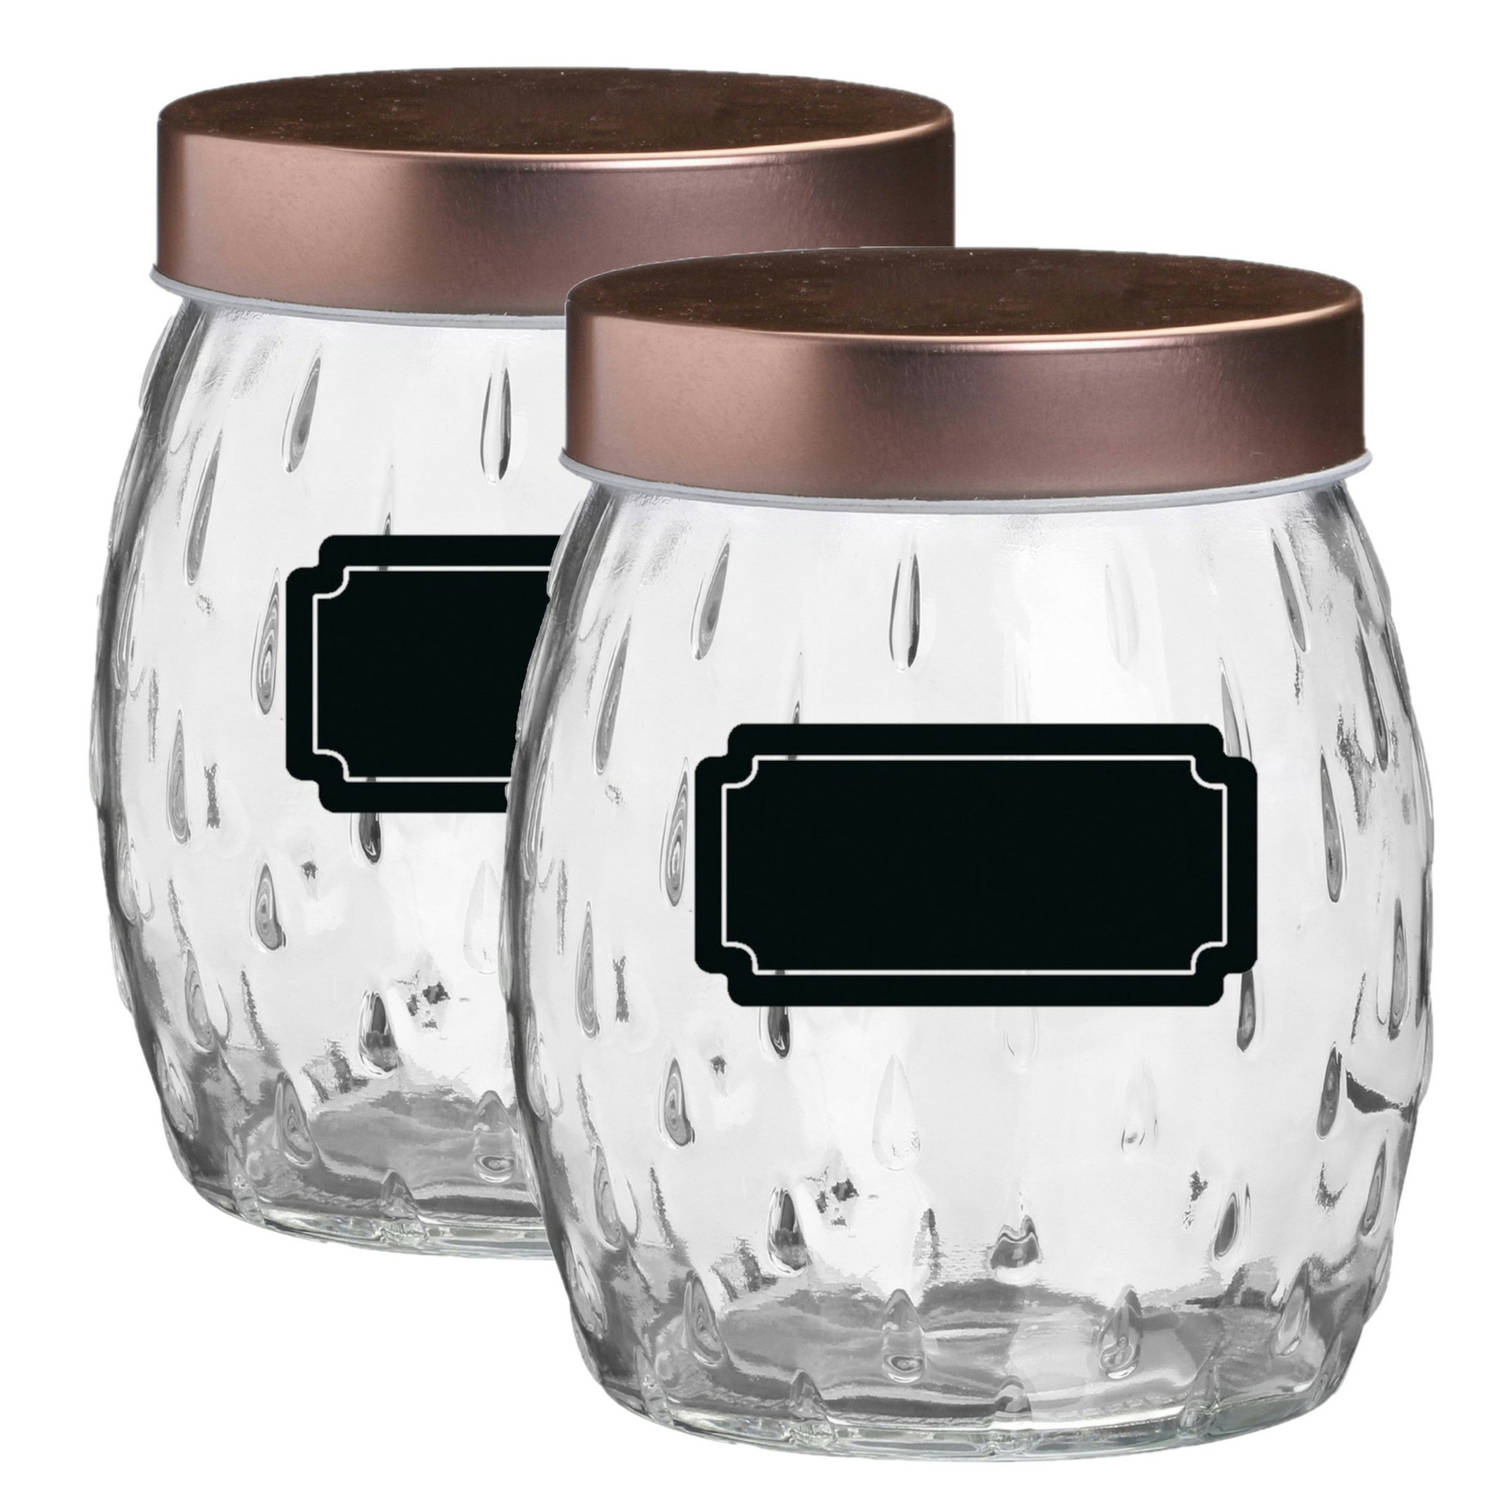 Voorraadpotbewaarpot Beau 4x 2L glas koperen deksel incl etiketten Voorraadpot